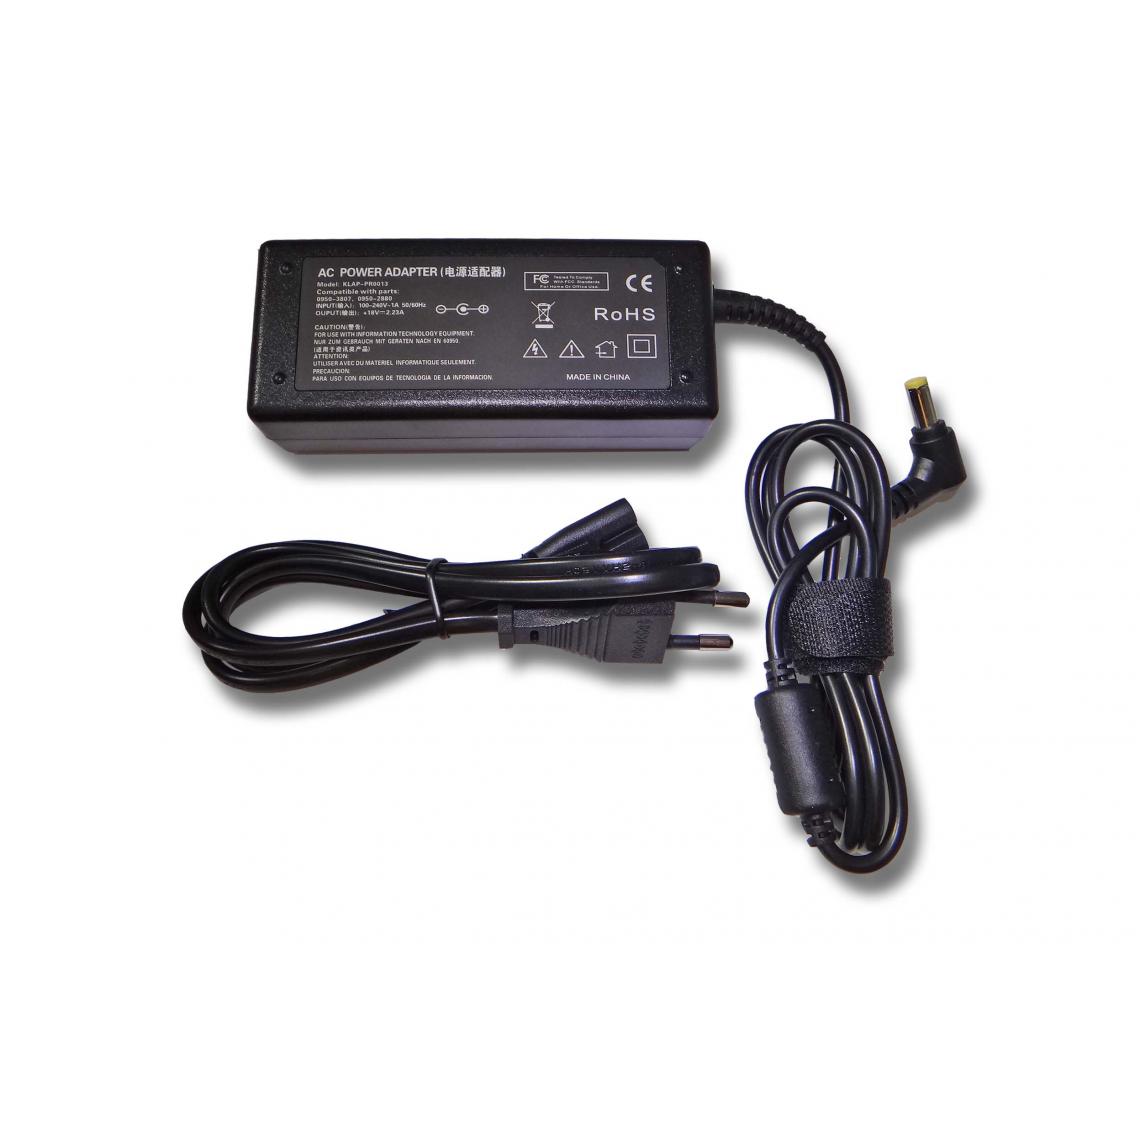 Vhbw - vhbw Imprimante Adaptateur bloc d'alimentation Câble d'alimentation Chargeur remplace HP 0950-2880, 0950-3807 pour imprimante - 2.23A - Accessoires alimentation